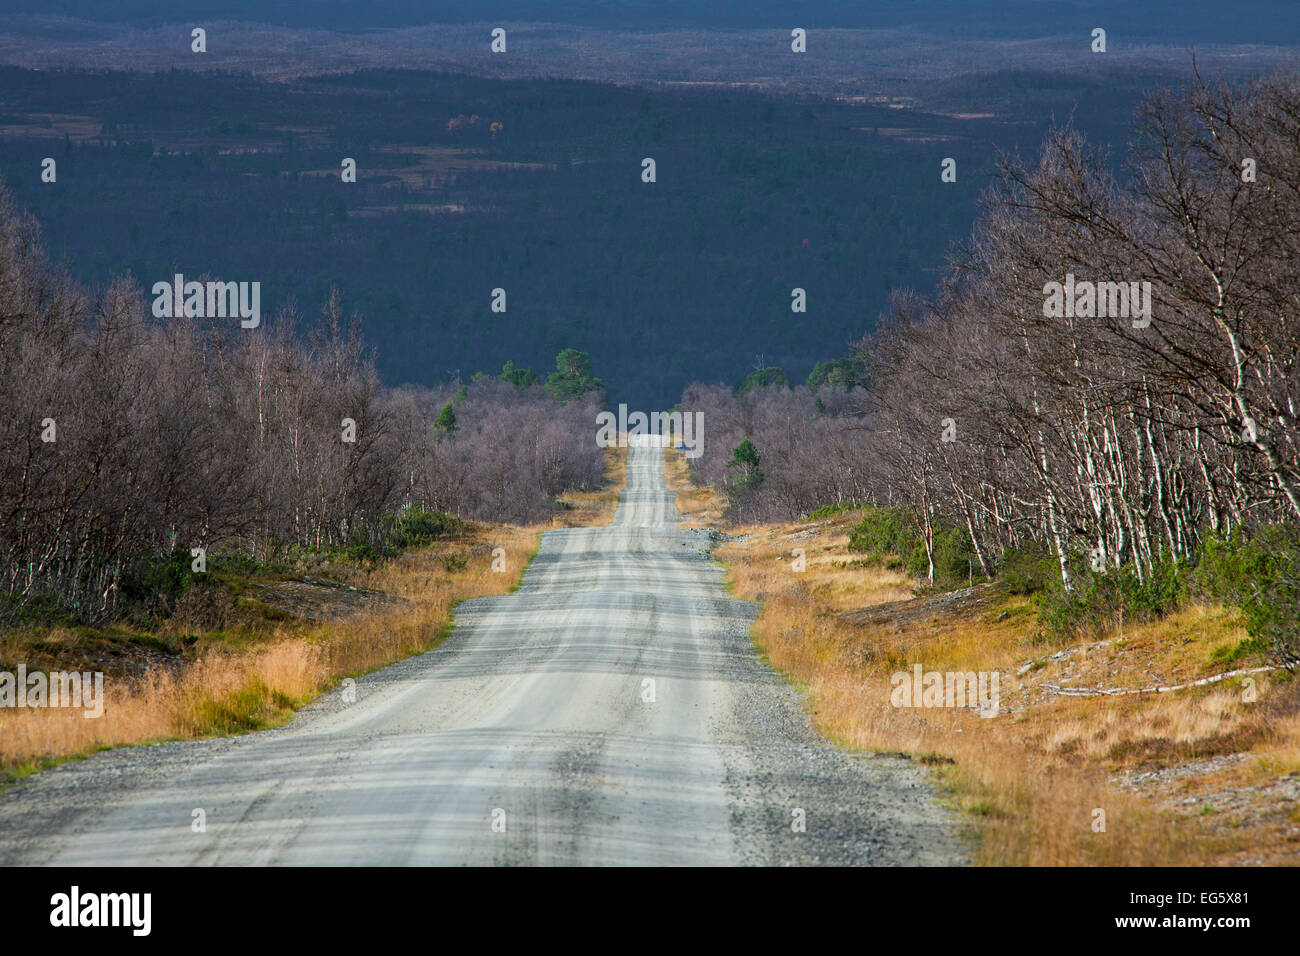 Route de terre de désolation à travers forêt de bouleaux en automne, Jämtland / Jaemtland, Suède Banque D'Images